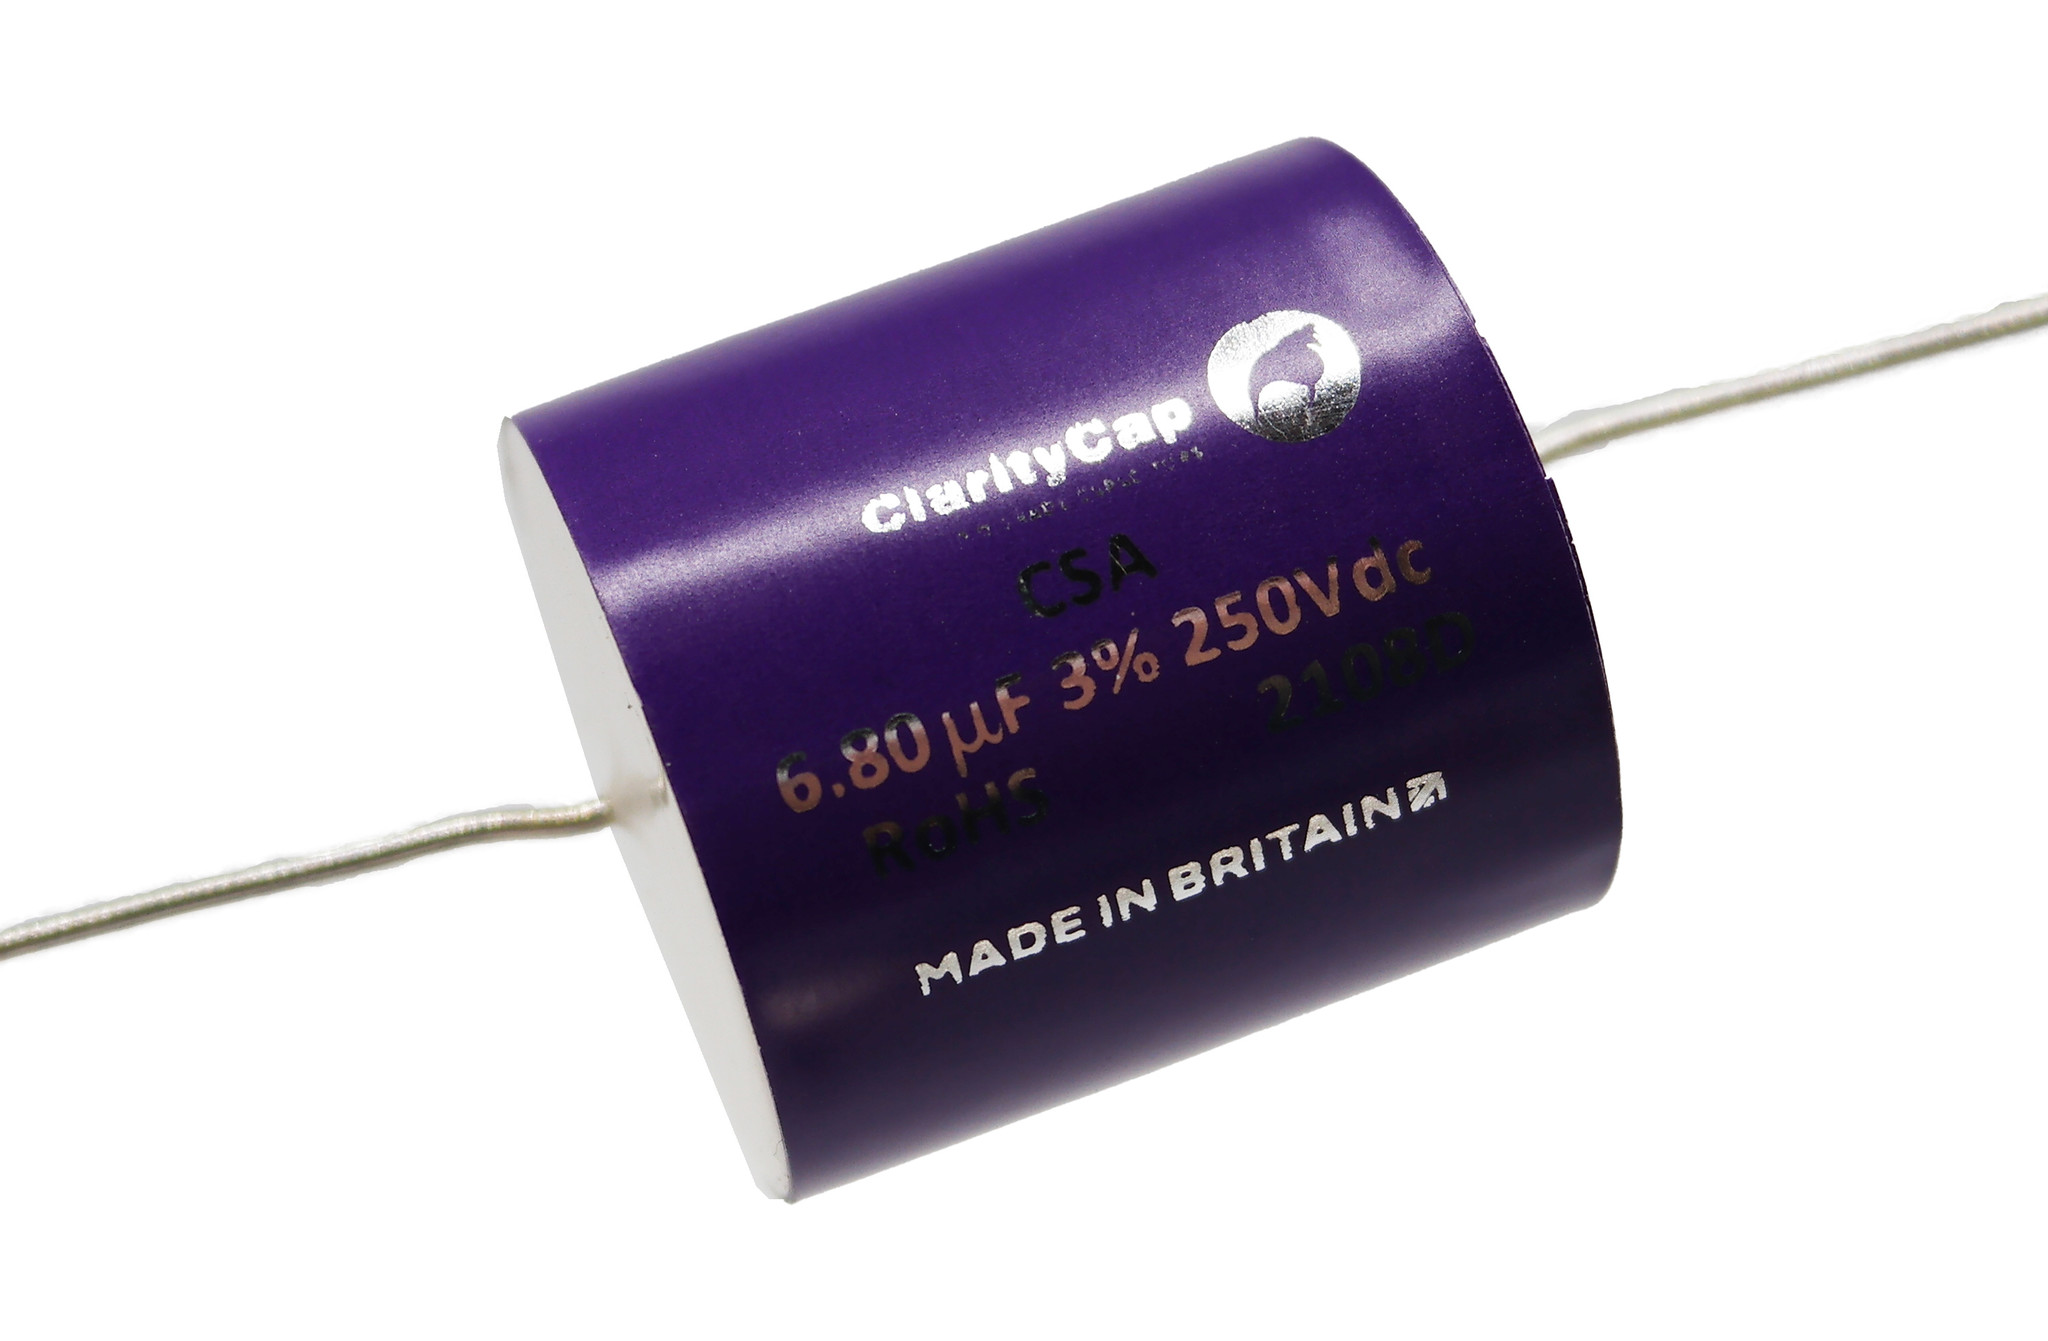 Condensatoare - Condensator film ClarityCap CSA6u8H250Vdc| 6.8 µF | 3% | 250 V, audioclub.ro